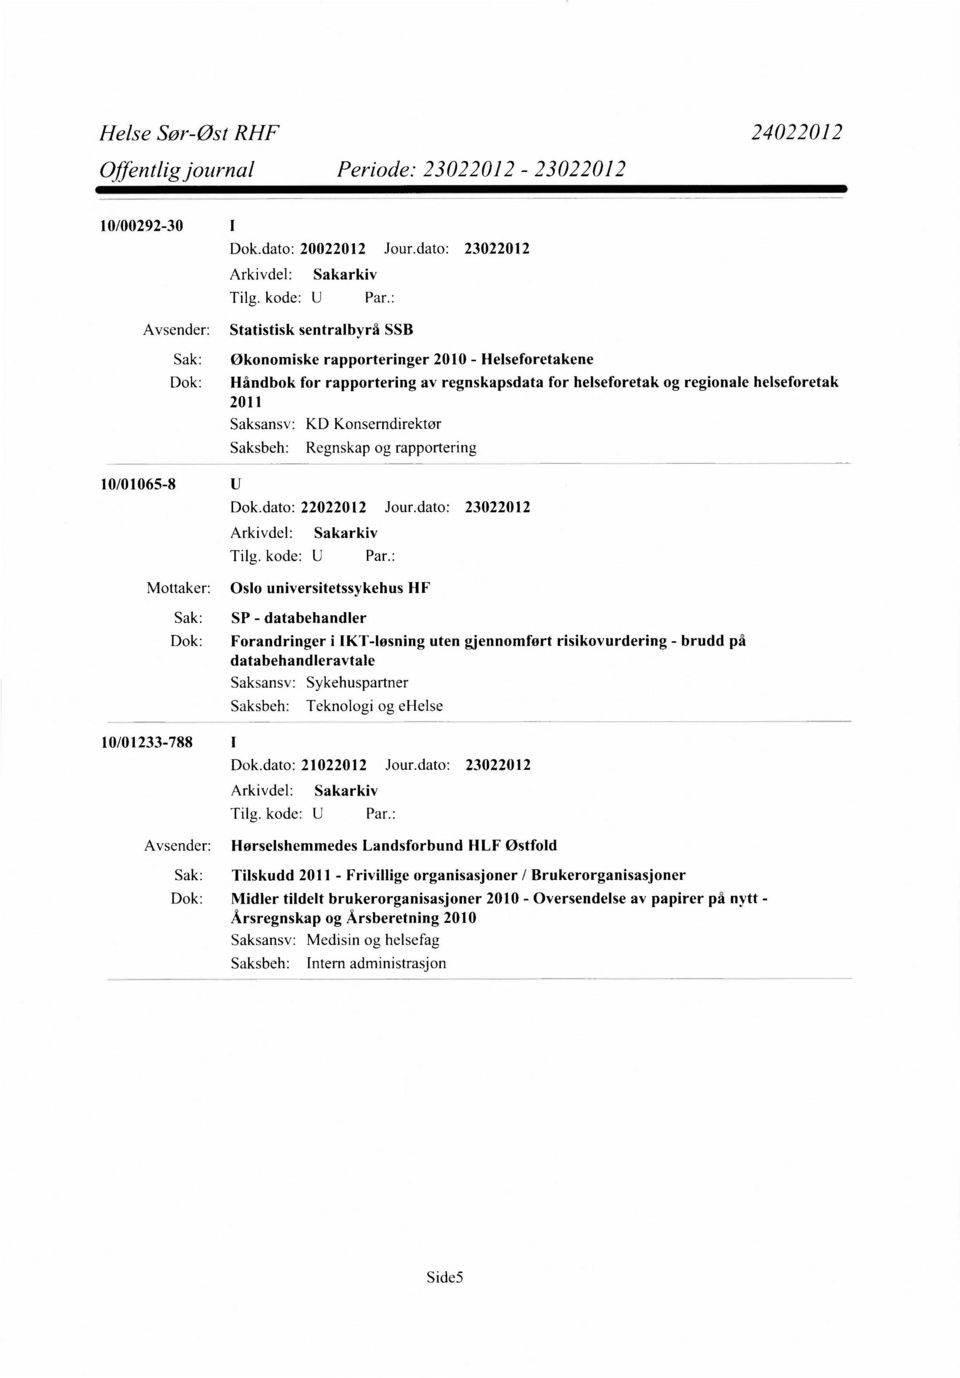 2011 KD Konserndirektør Regnskap og rapportering 10/01065-8 Mottaker: Oslo universitetssykehus HF 10/01233-788 I Sak: SP - databehandler Dok: Forandringer i IKT-Iøsning uten gjennomfort